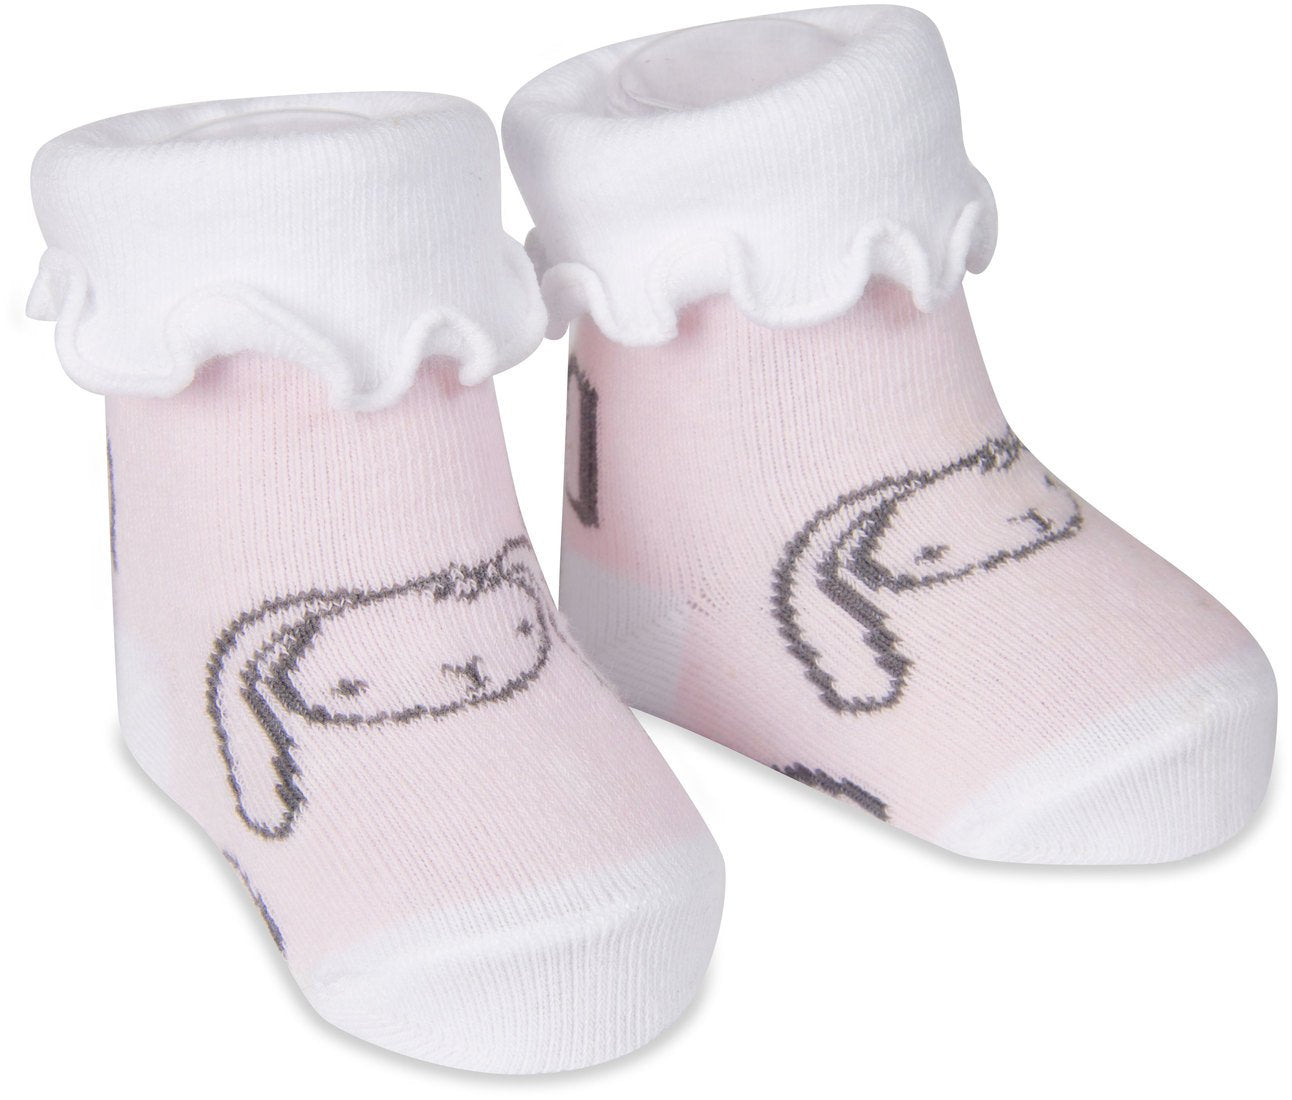 Soft Pink Bunny Baby Socks Baby Socks Izzy & Owie - GigglesGear.com